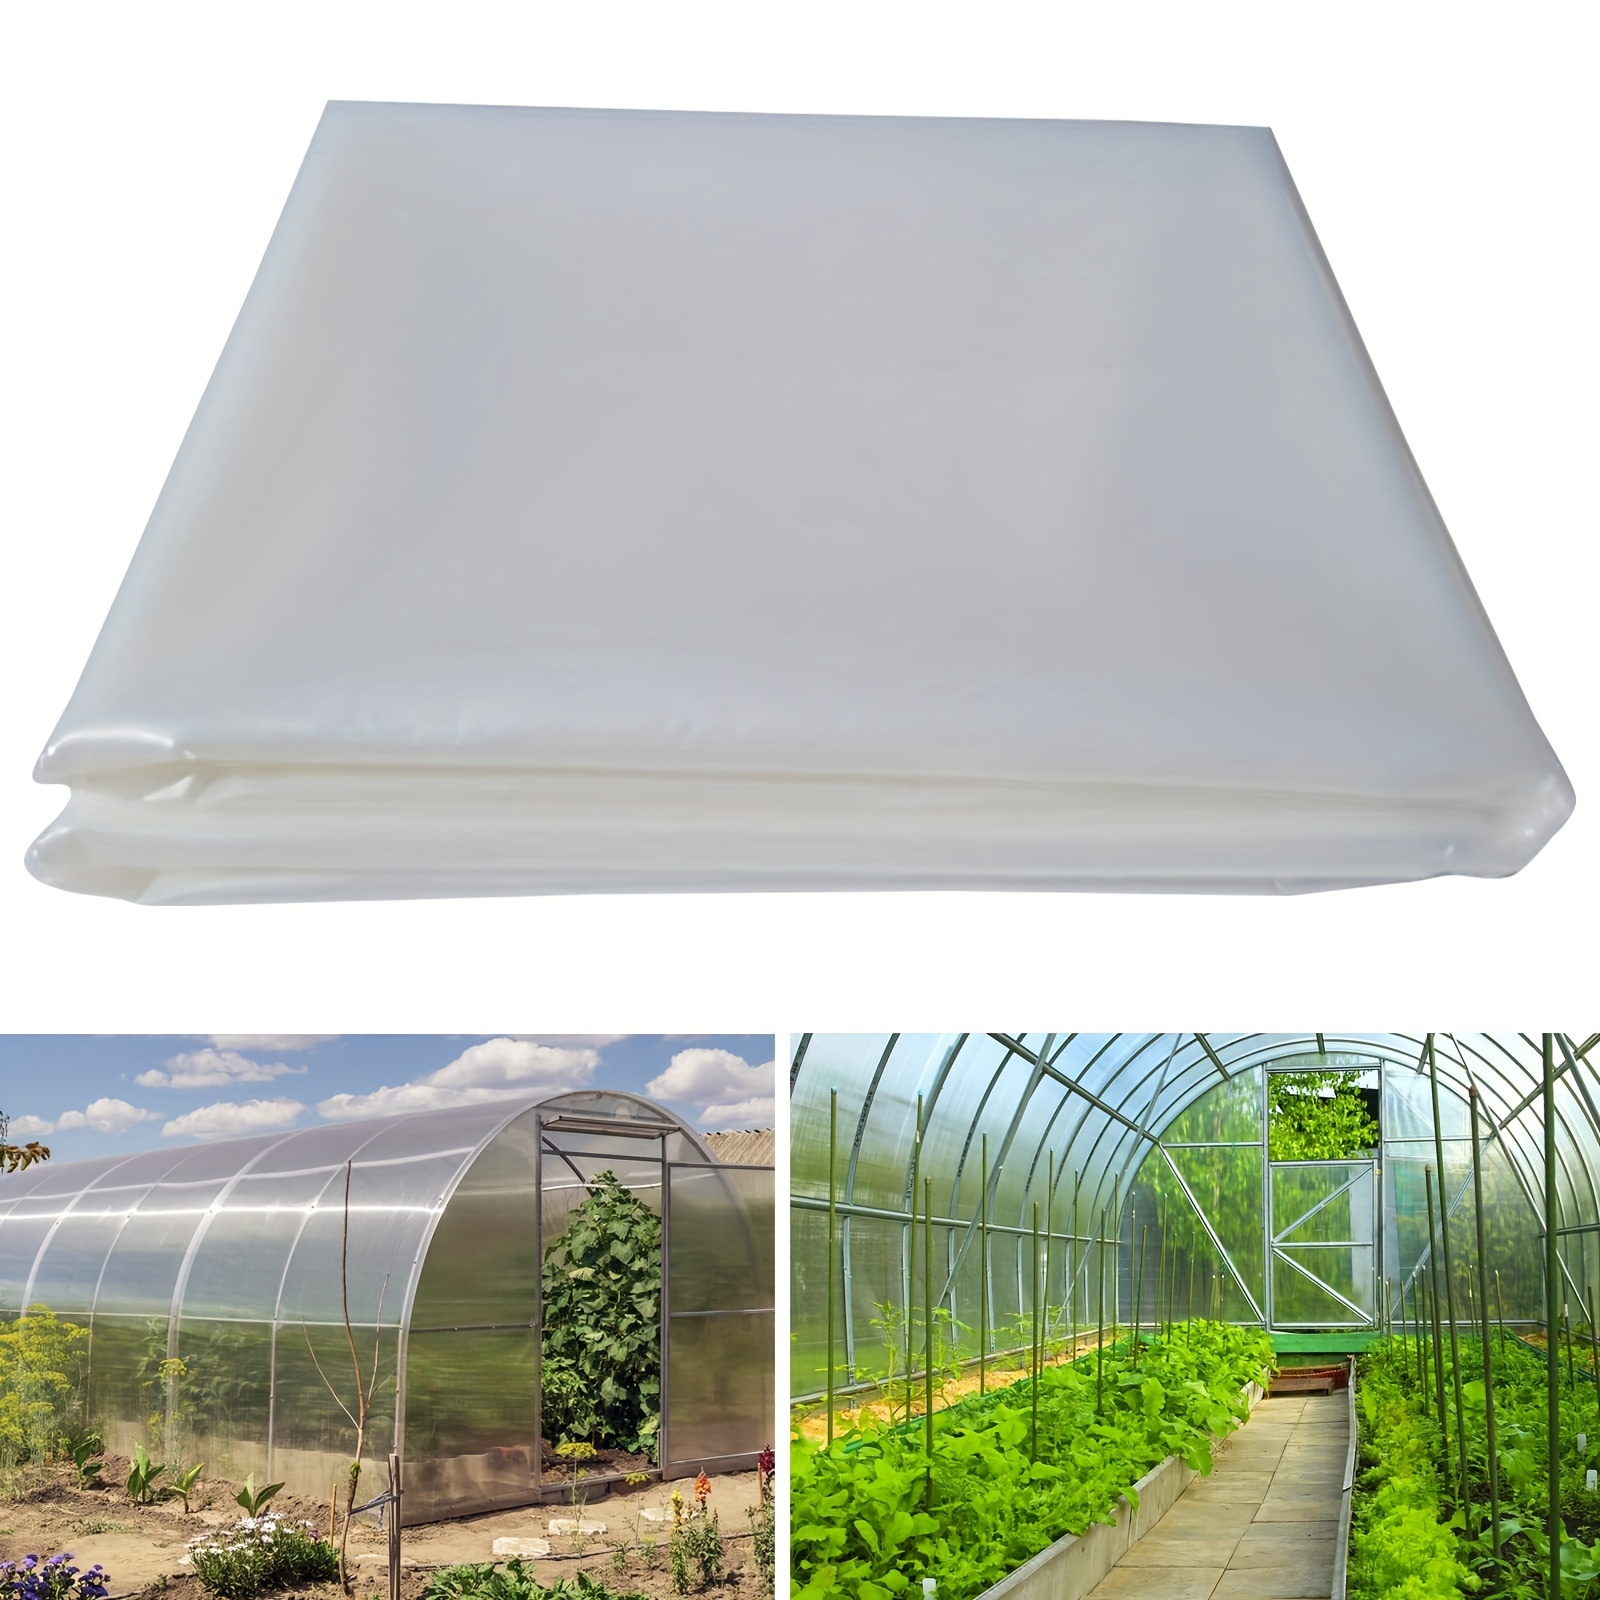 Cubierta de película de plástico para invernaderos de 6 mil de 10 x 26  pies, resistente a los rayos UV, película de polietileno transparente,  cubierta